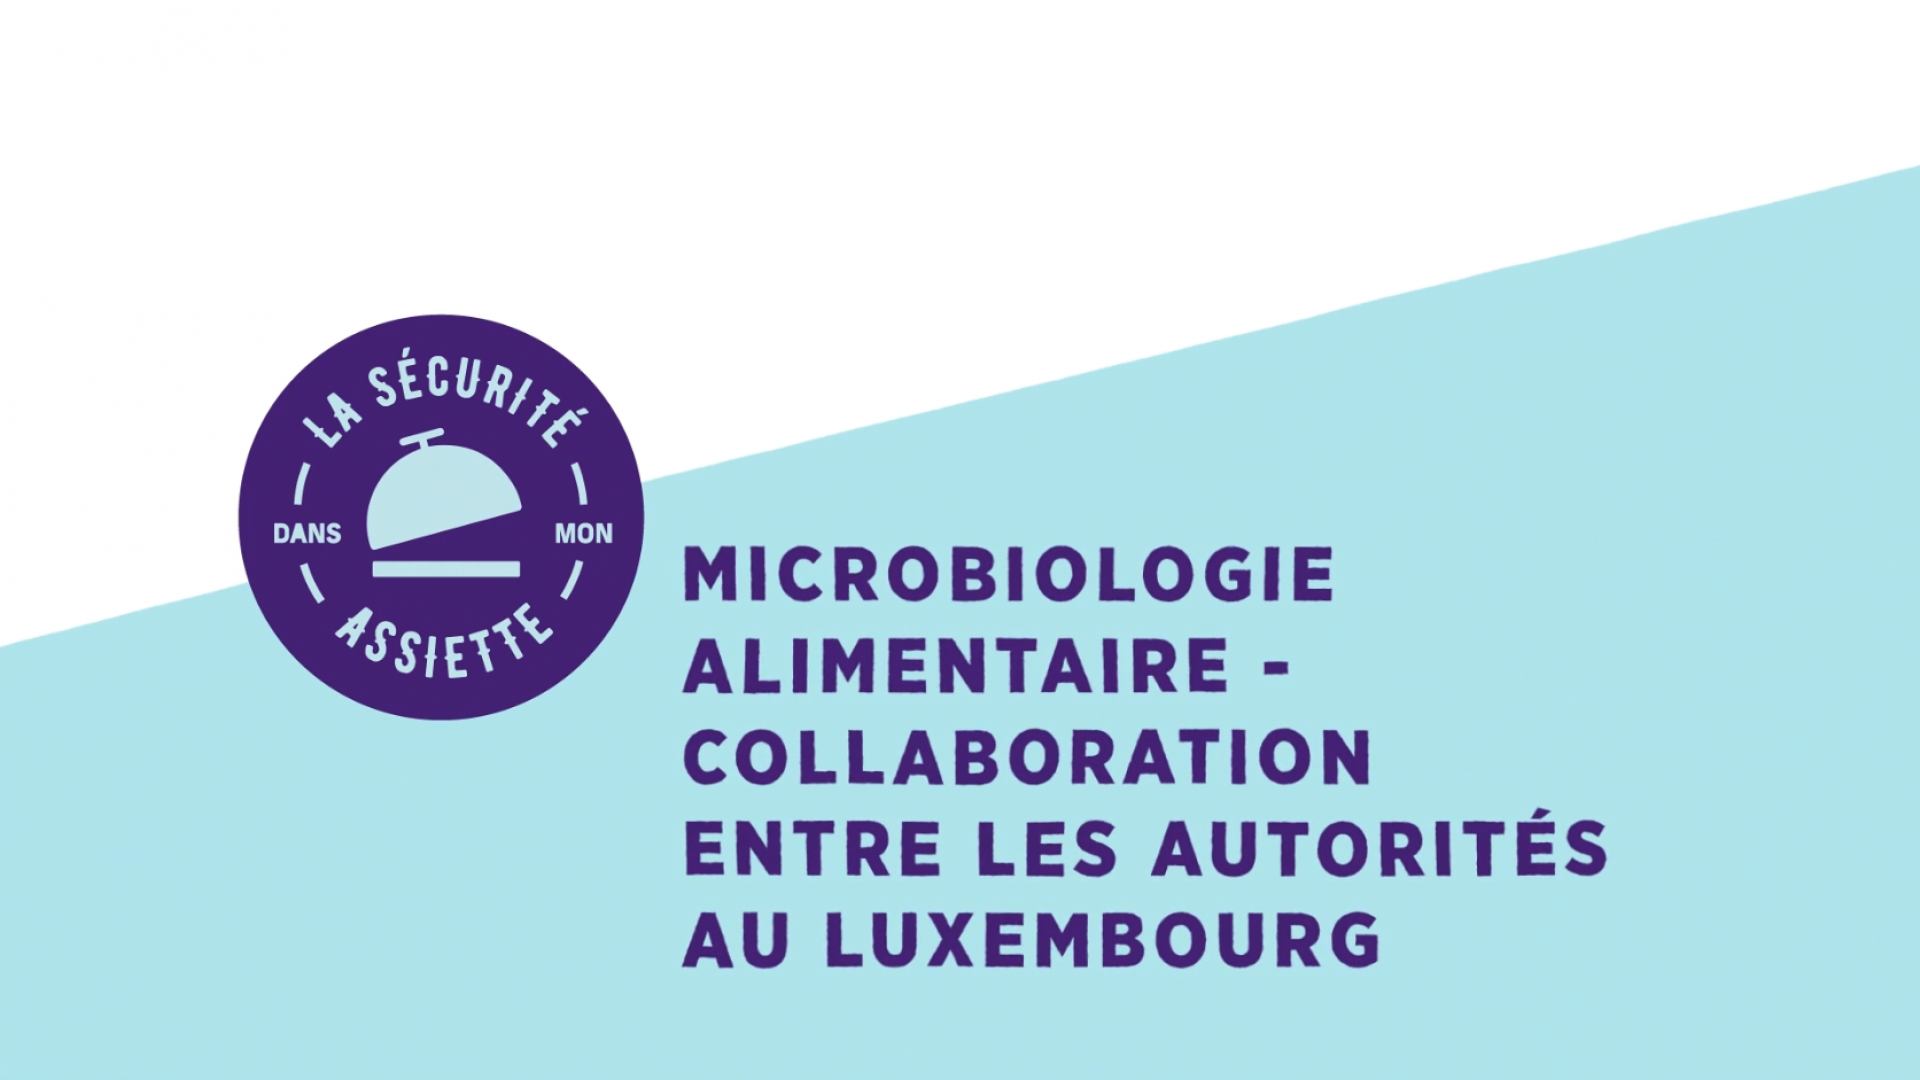 Microbiologie alimentaire - Collaboration entre les autorités au Luxembourg (sous-titres DE)